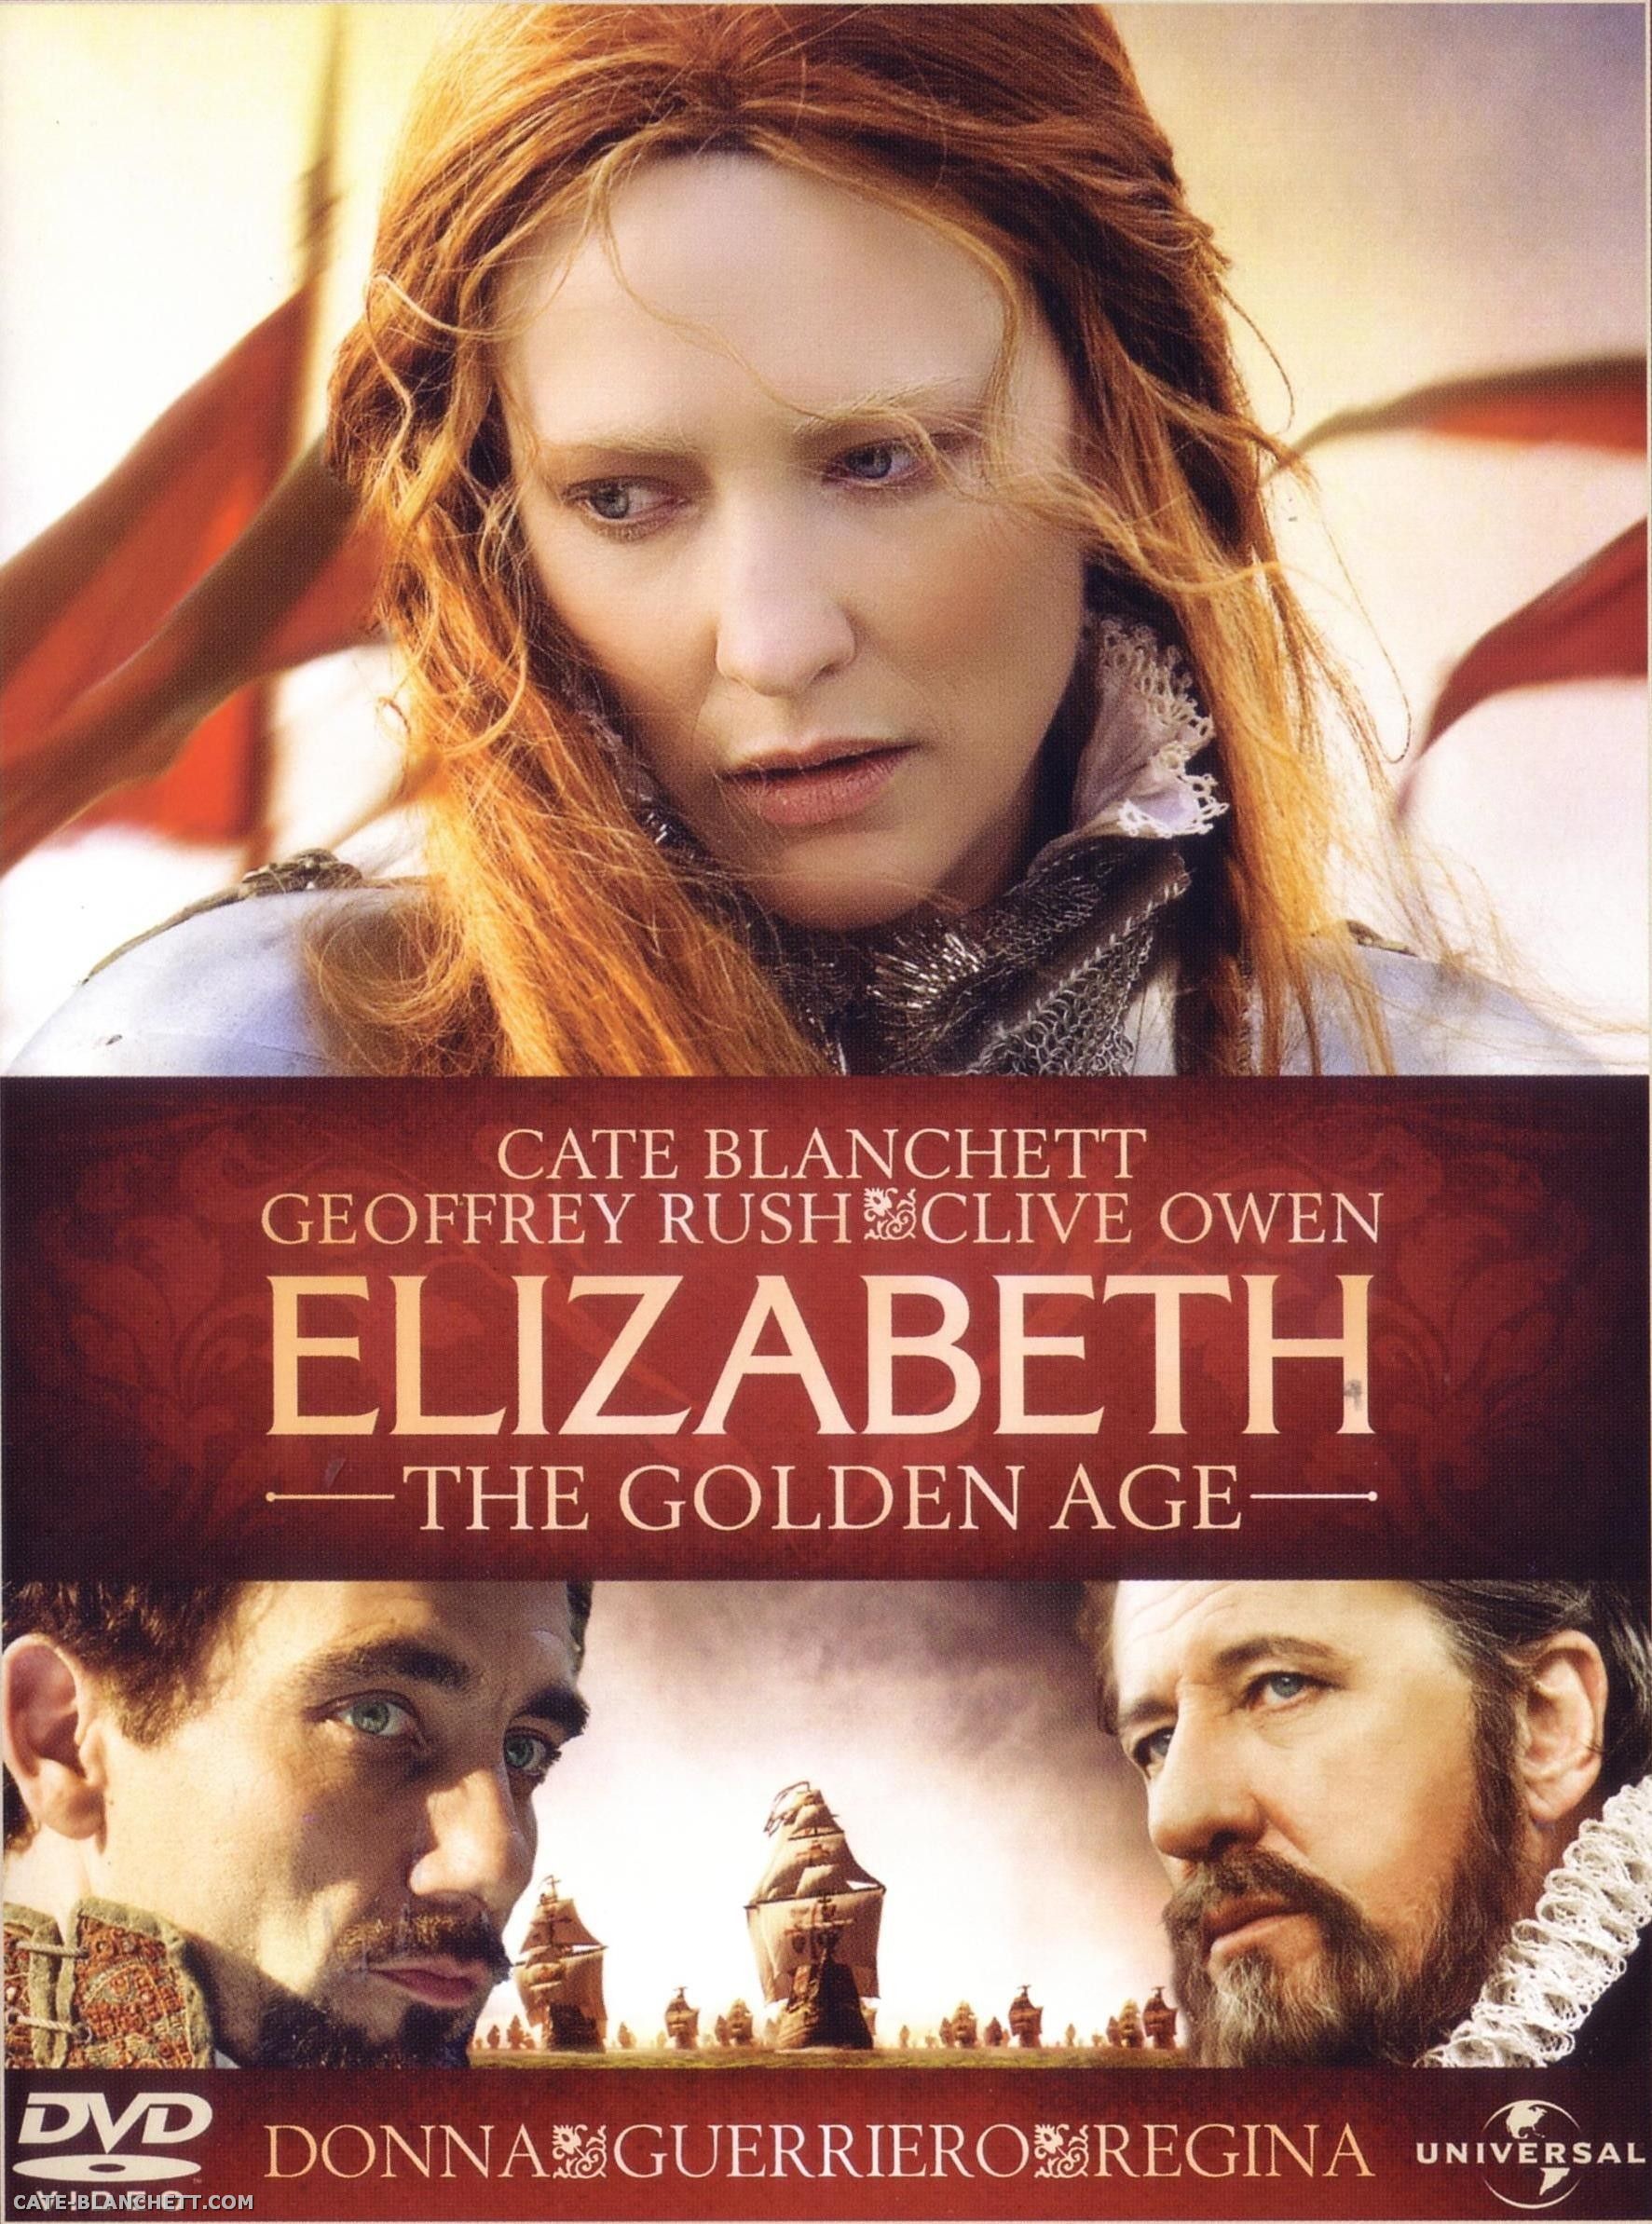 ElizabethTheGoldenAge-Posters_015.jpg